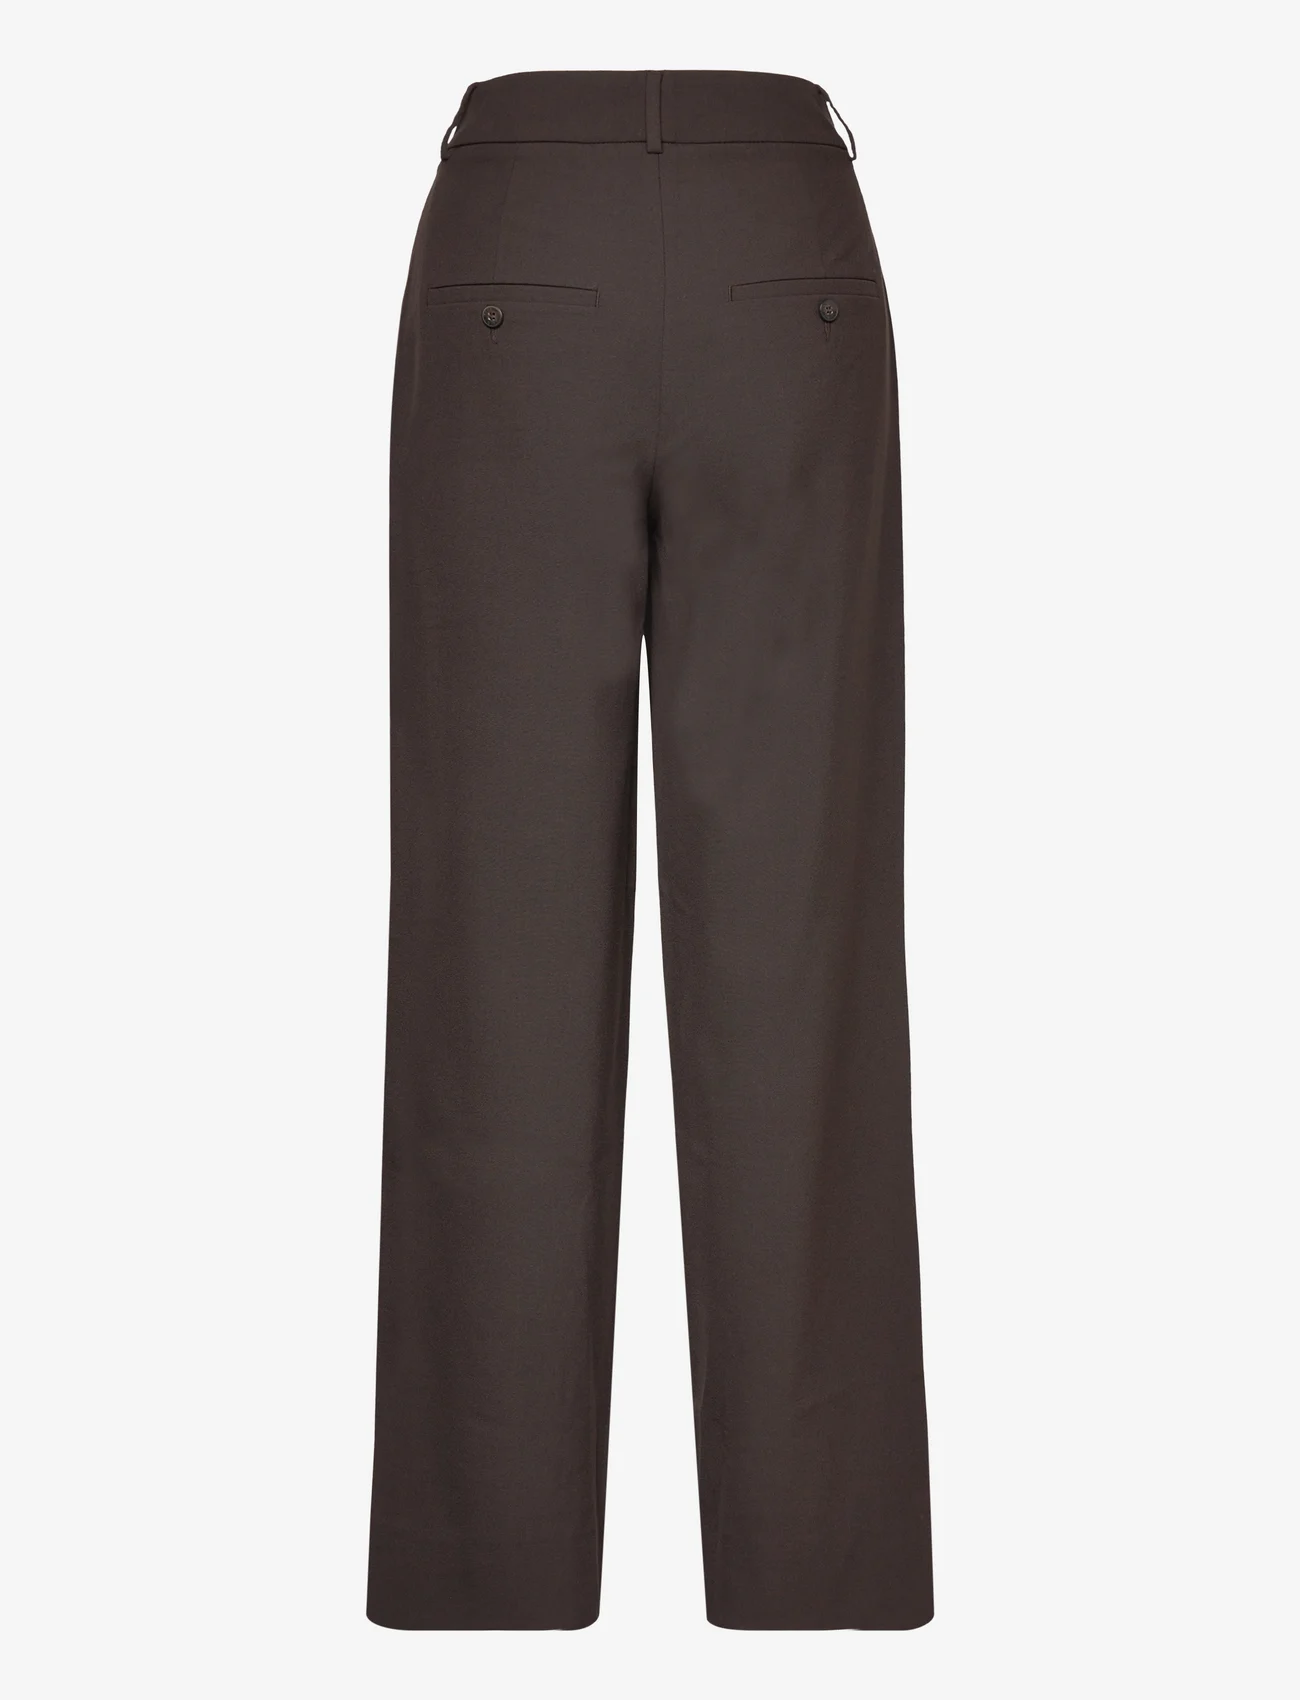 FIVEUNITS - Sophia - bukser med brede ben - dark brown melange - 1